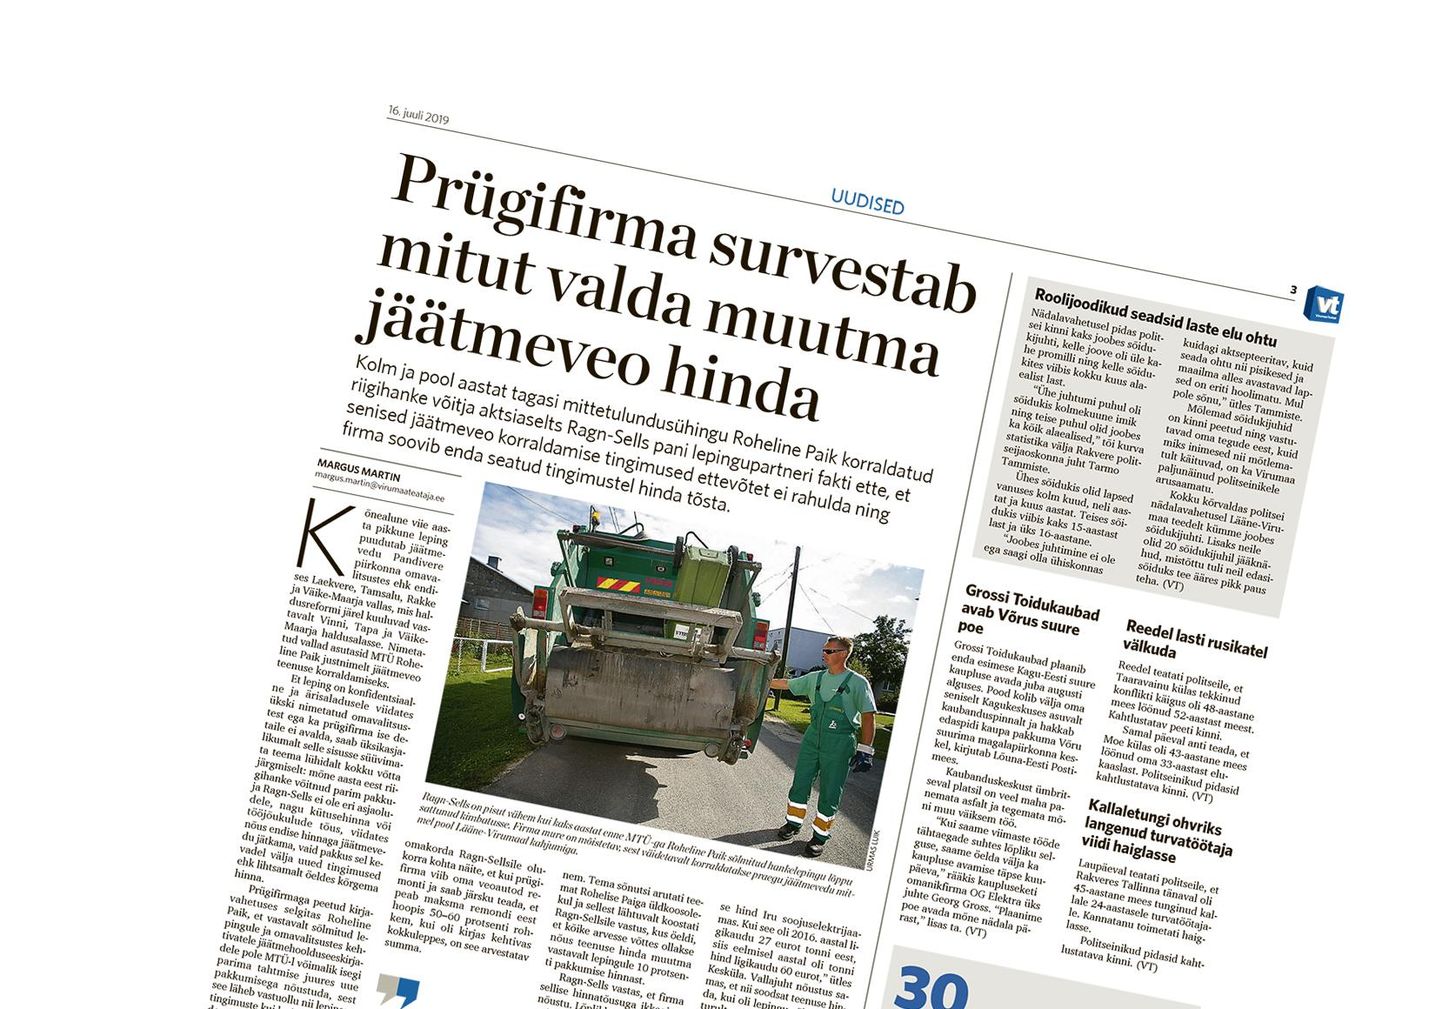 Vastukaja: “Prügifirma survestab mitut valda muutma jäätmeveo hinda” 16. juuli Virumaa Teatajas.